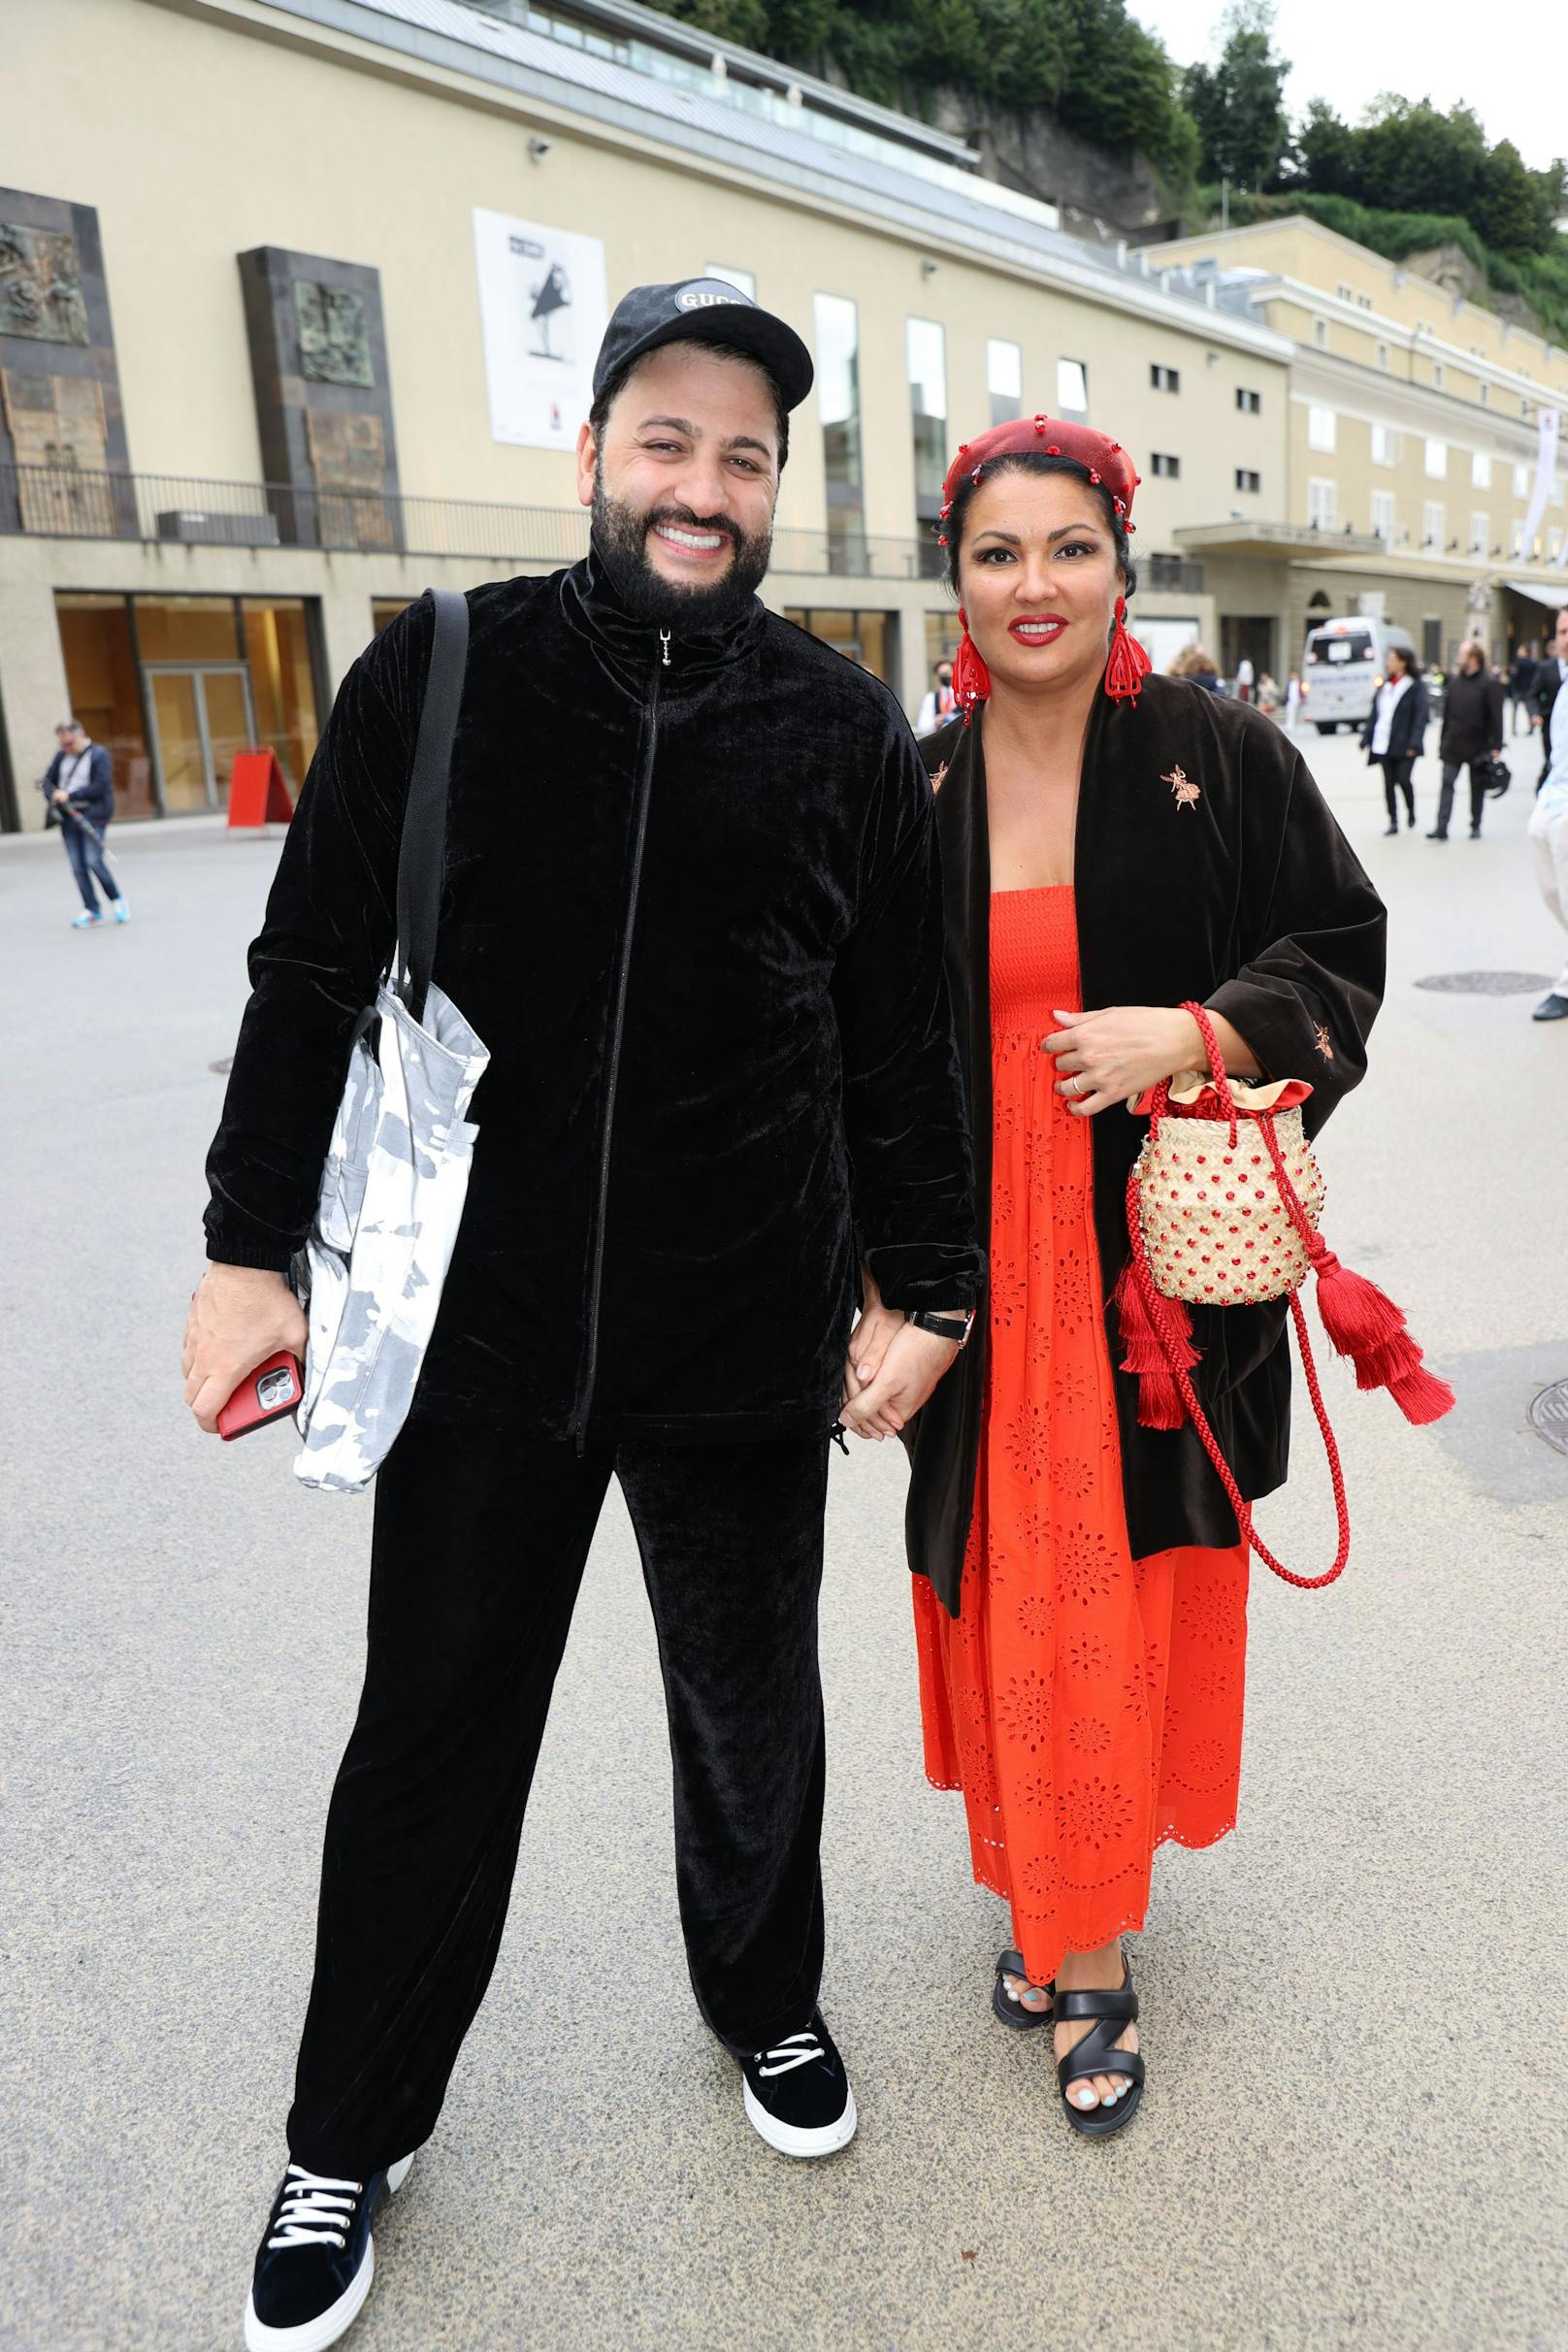 Anna Netrebko spaziert mit Ehemann Yusif Eyvazov nach der "Tosca"-Vorstellung am Freitag (27.8.) durch Salzburg. An den Tagen zuvor hatte sich das Paar zur Enttäuschung der Fans immer recht schnell zurückgezogen.